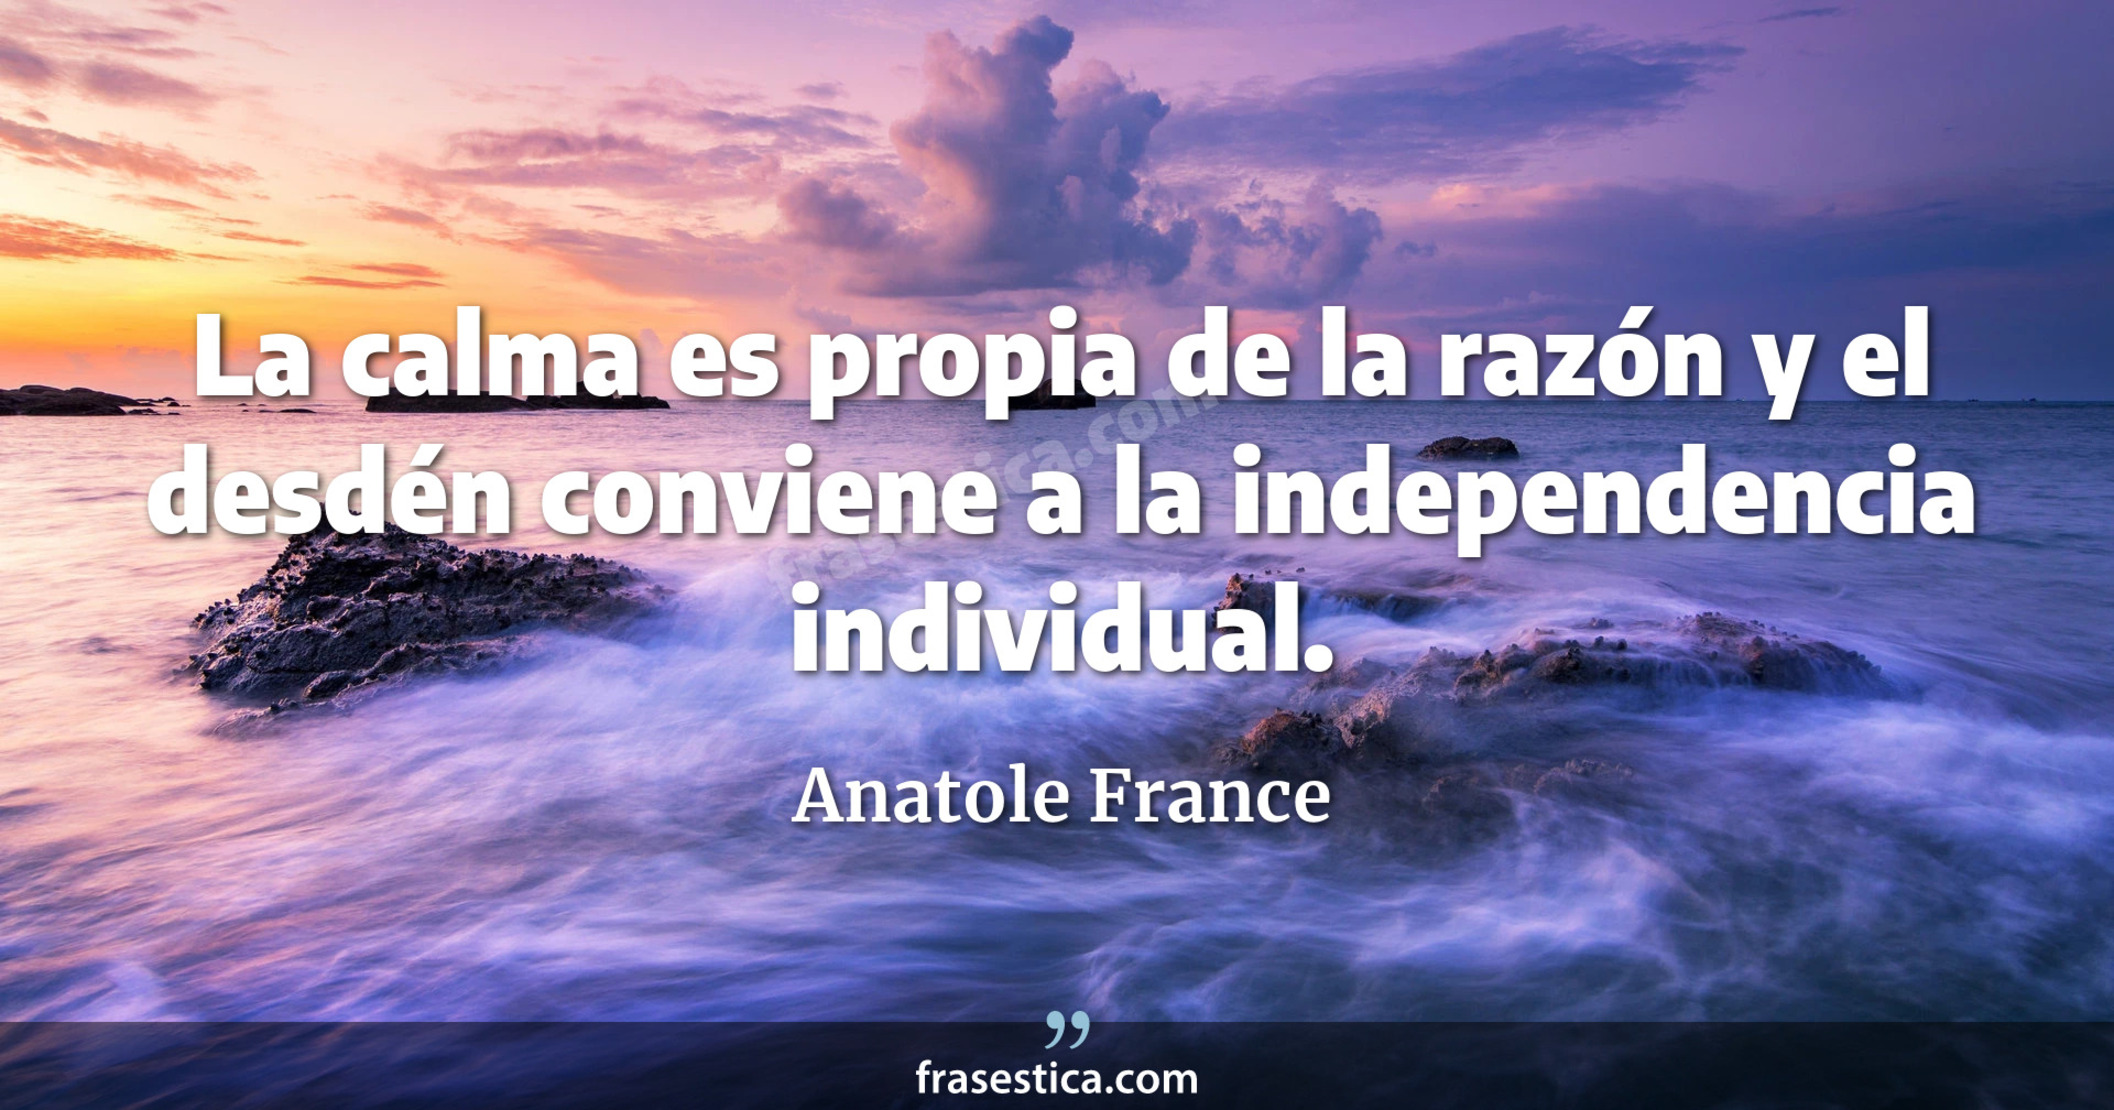 La calma es propia de la razón y el desdén conviene a la independencia individual. - Anatole France